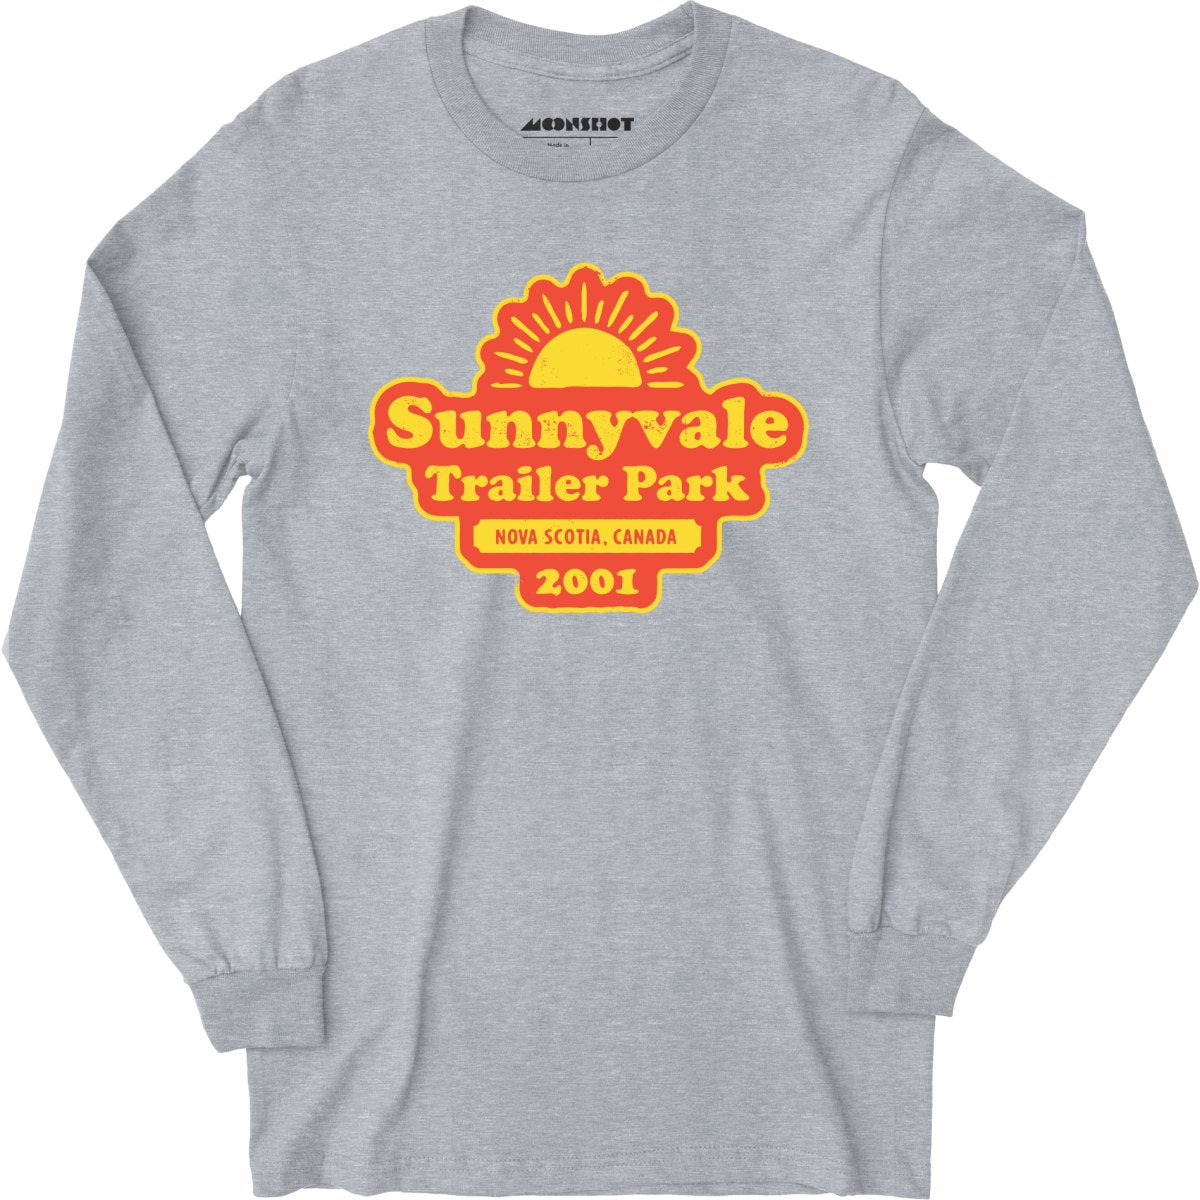 Sunnyvale Trailer Park - Long Sleeve T-Shirt